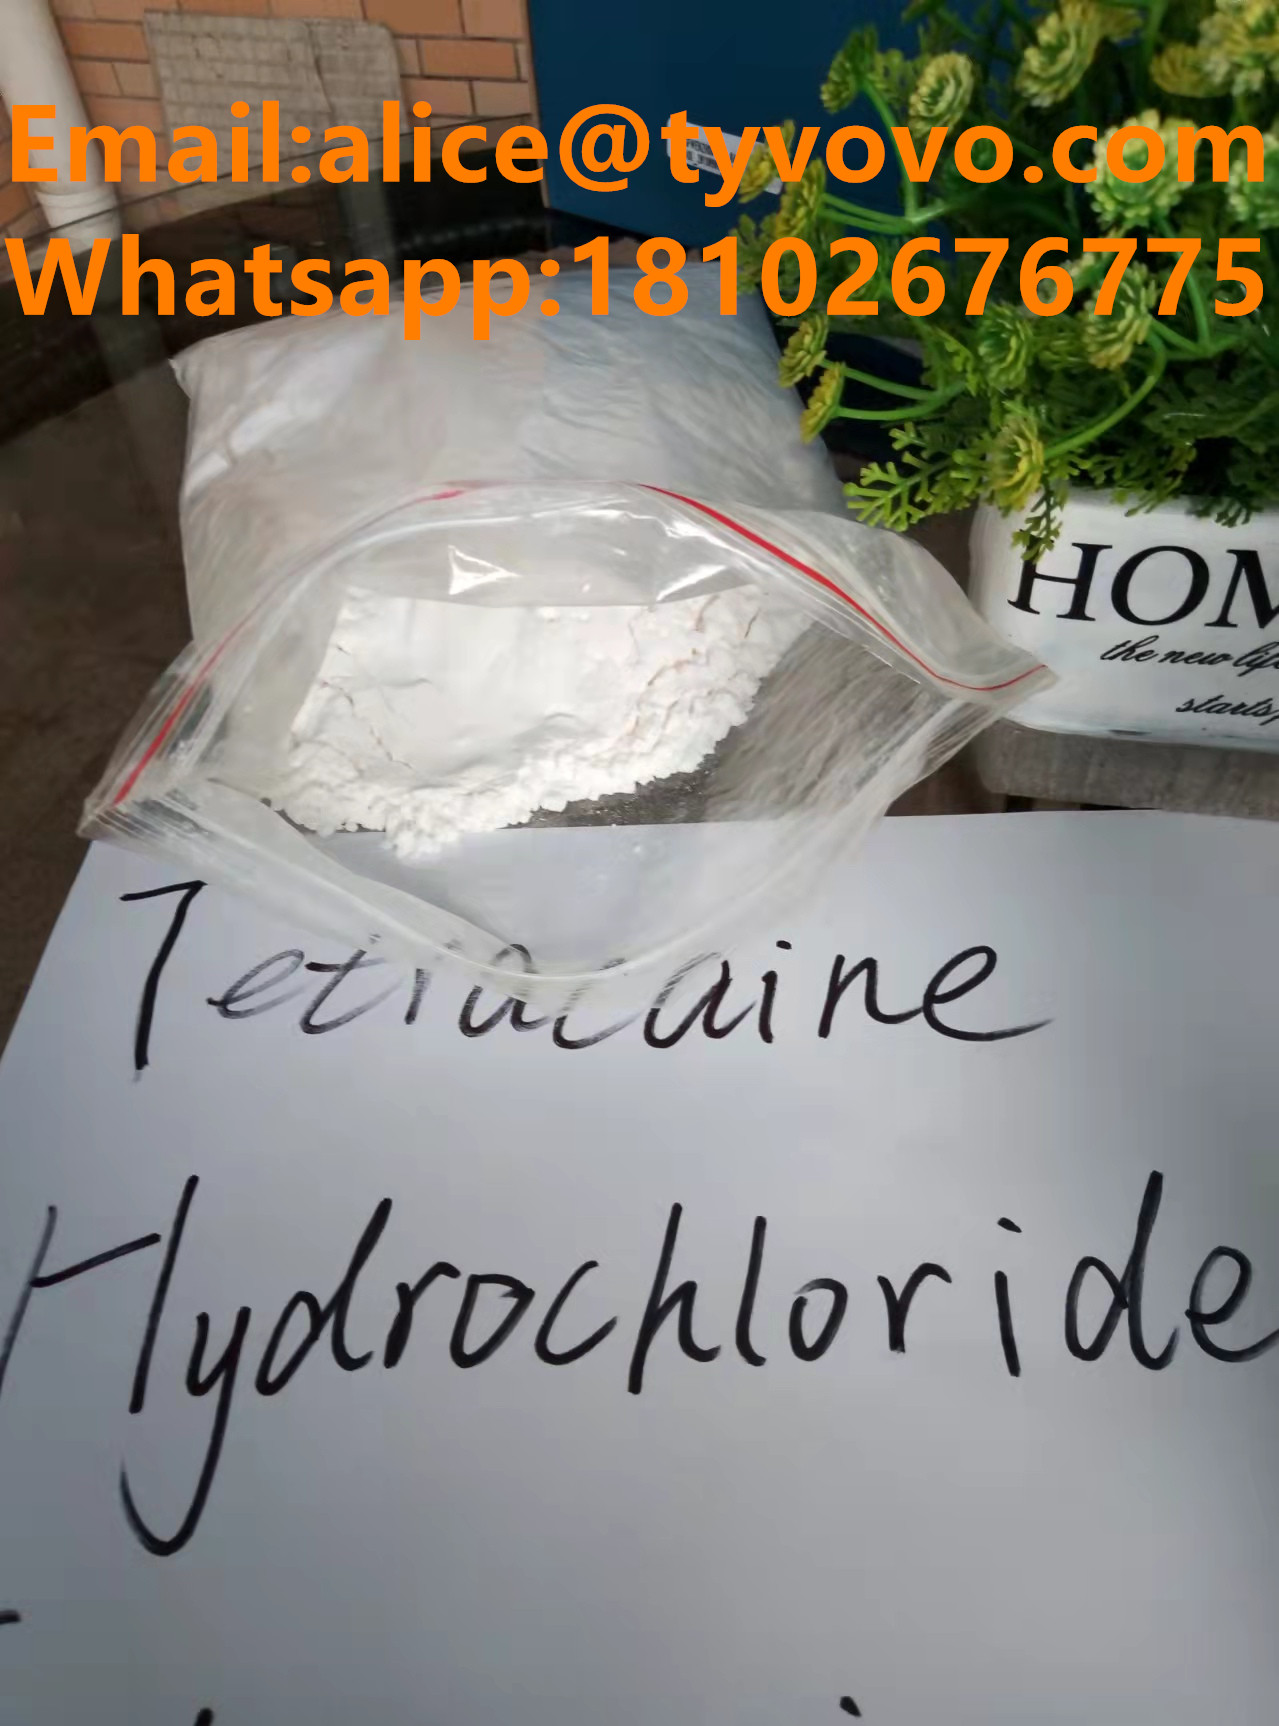 99% pure Tetracaine hydrochloride/tetracaina hcl/ powder with USP/BP standard  